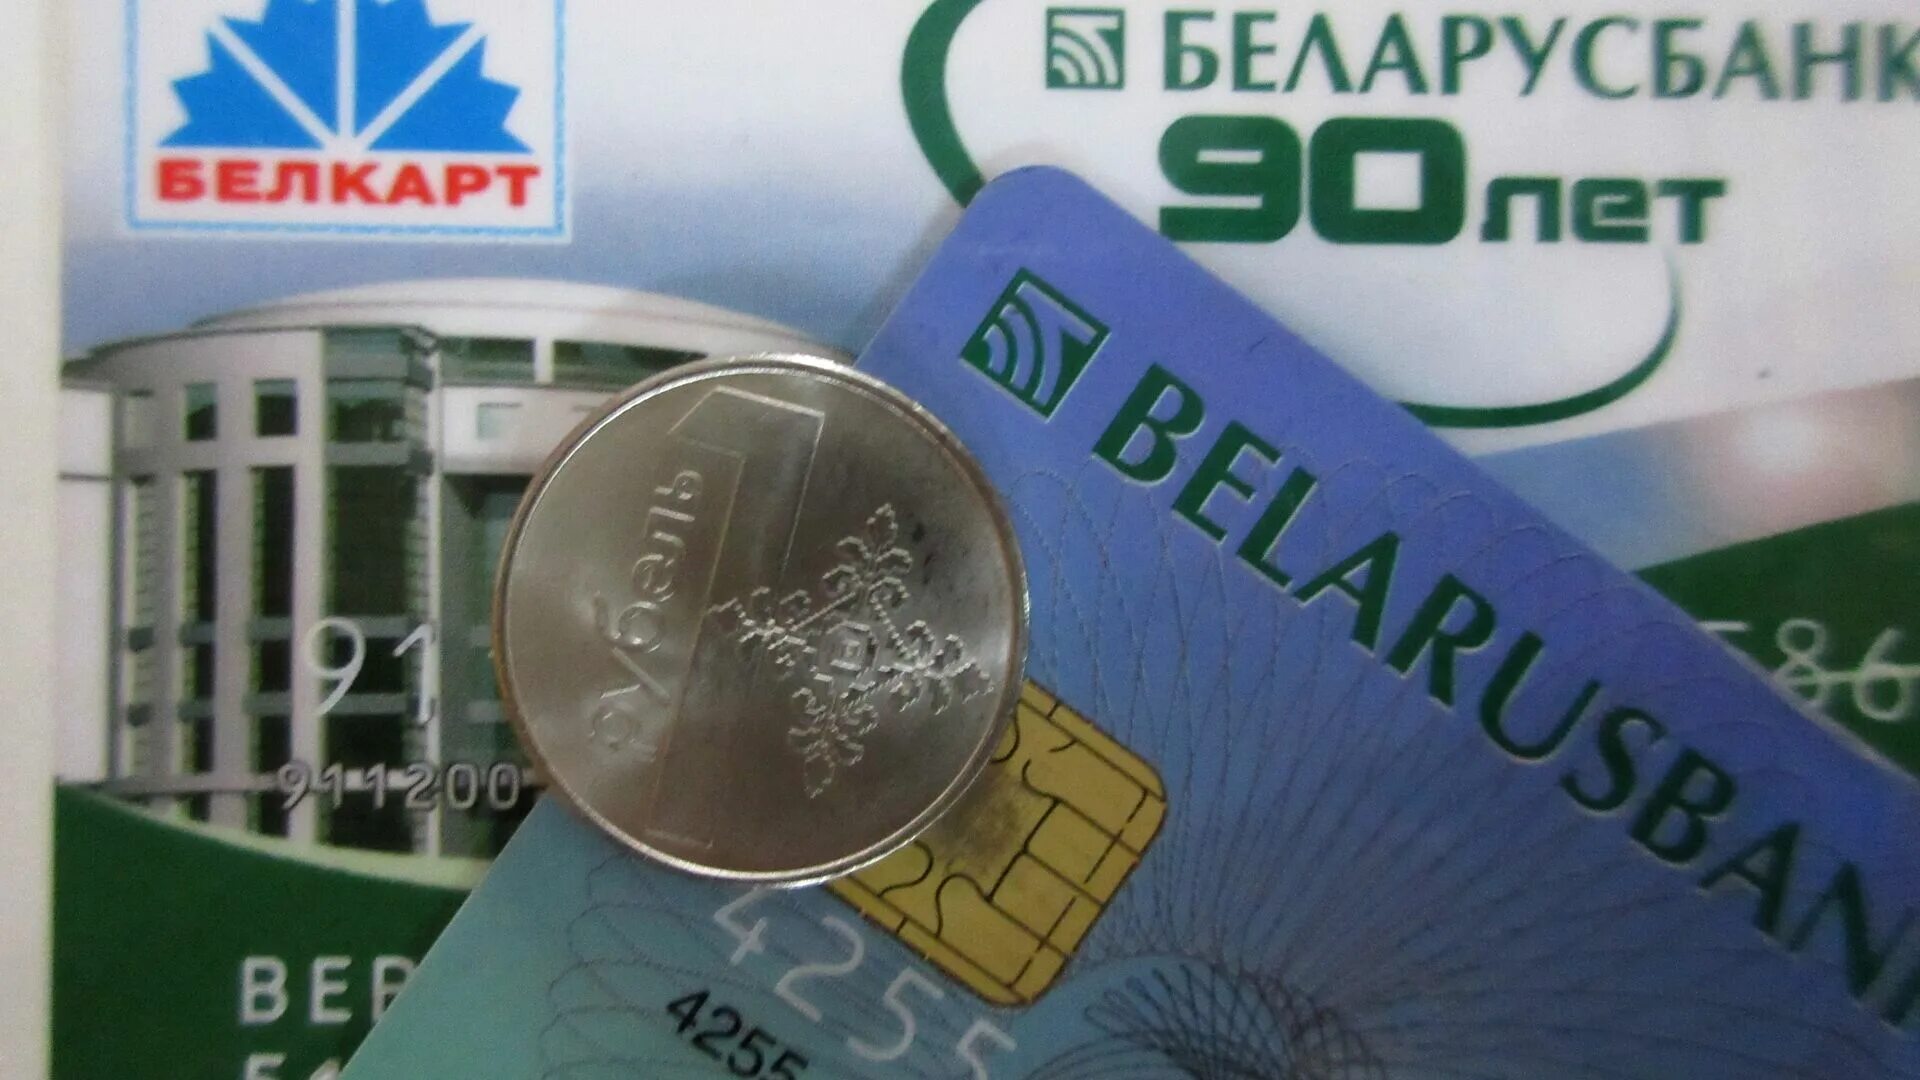 Беларусбанк. Карточки Беларусбанка. Беларусбанк карта. Беларусбанк фото.